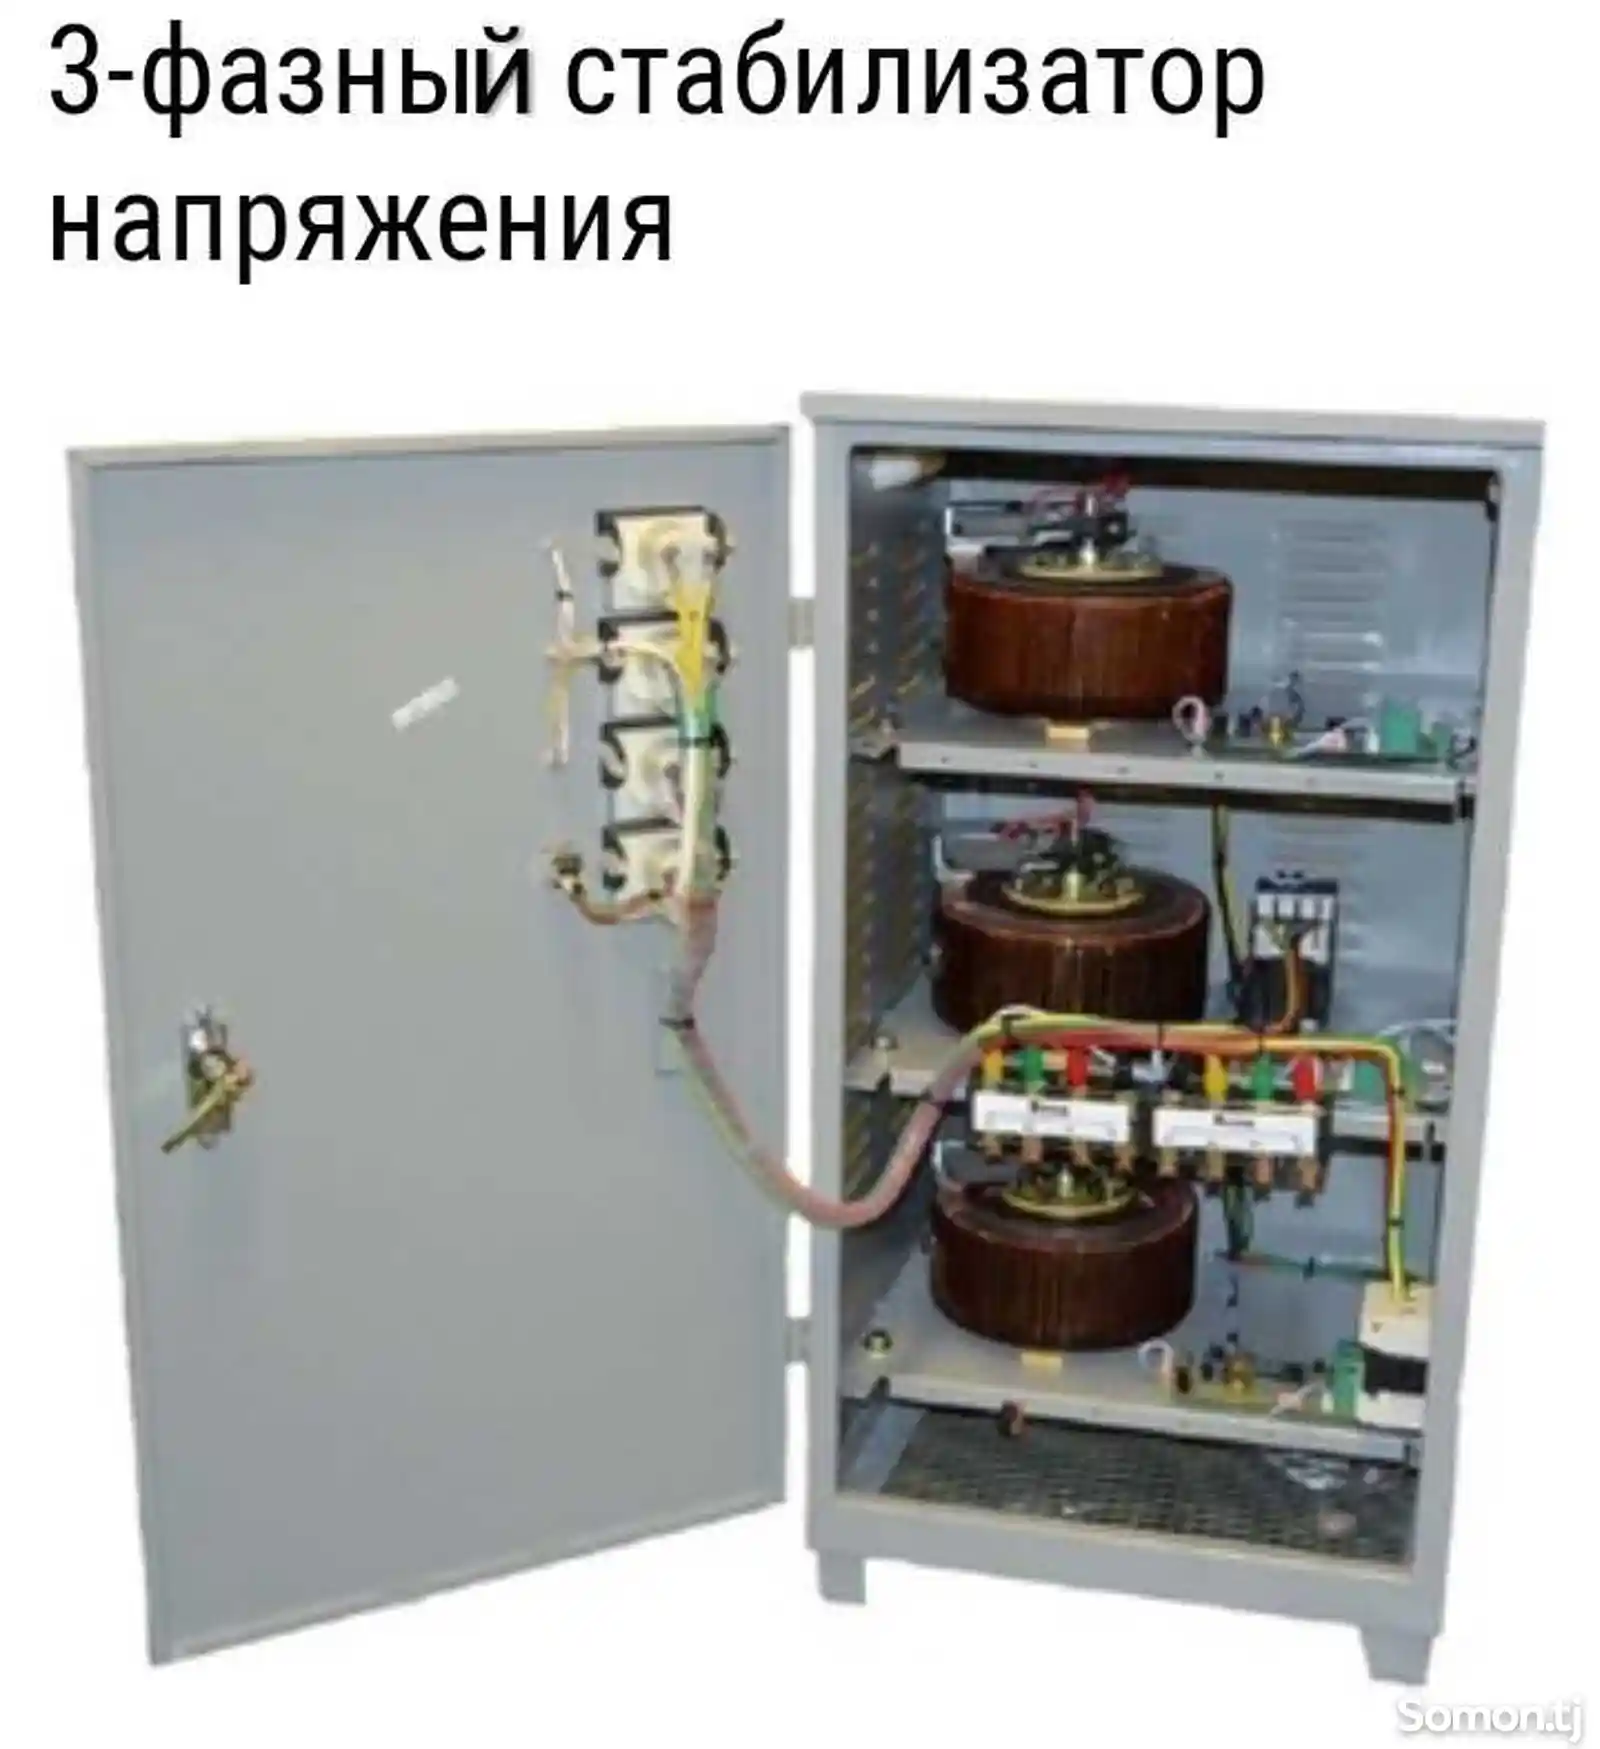 Услуги инженер-электрика-7